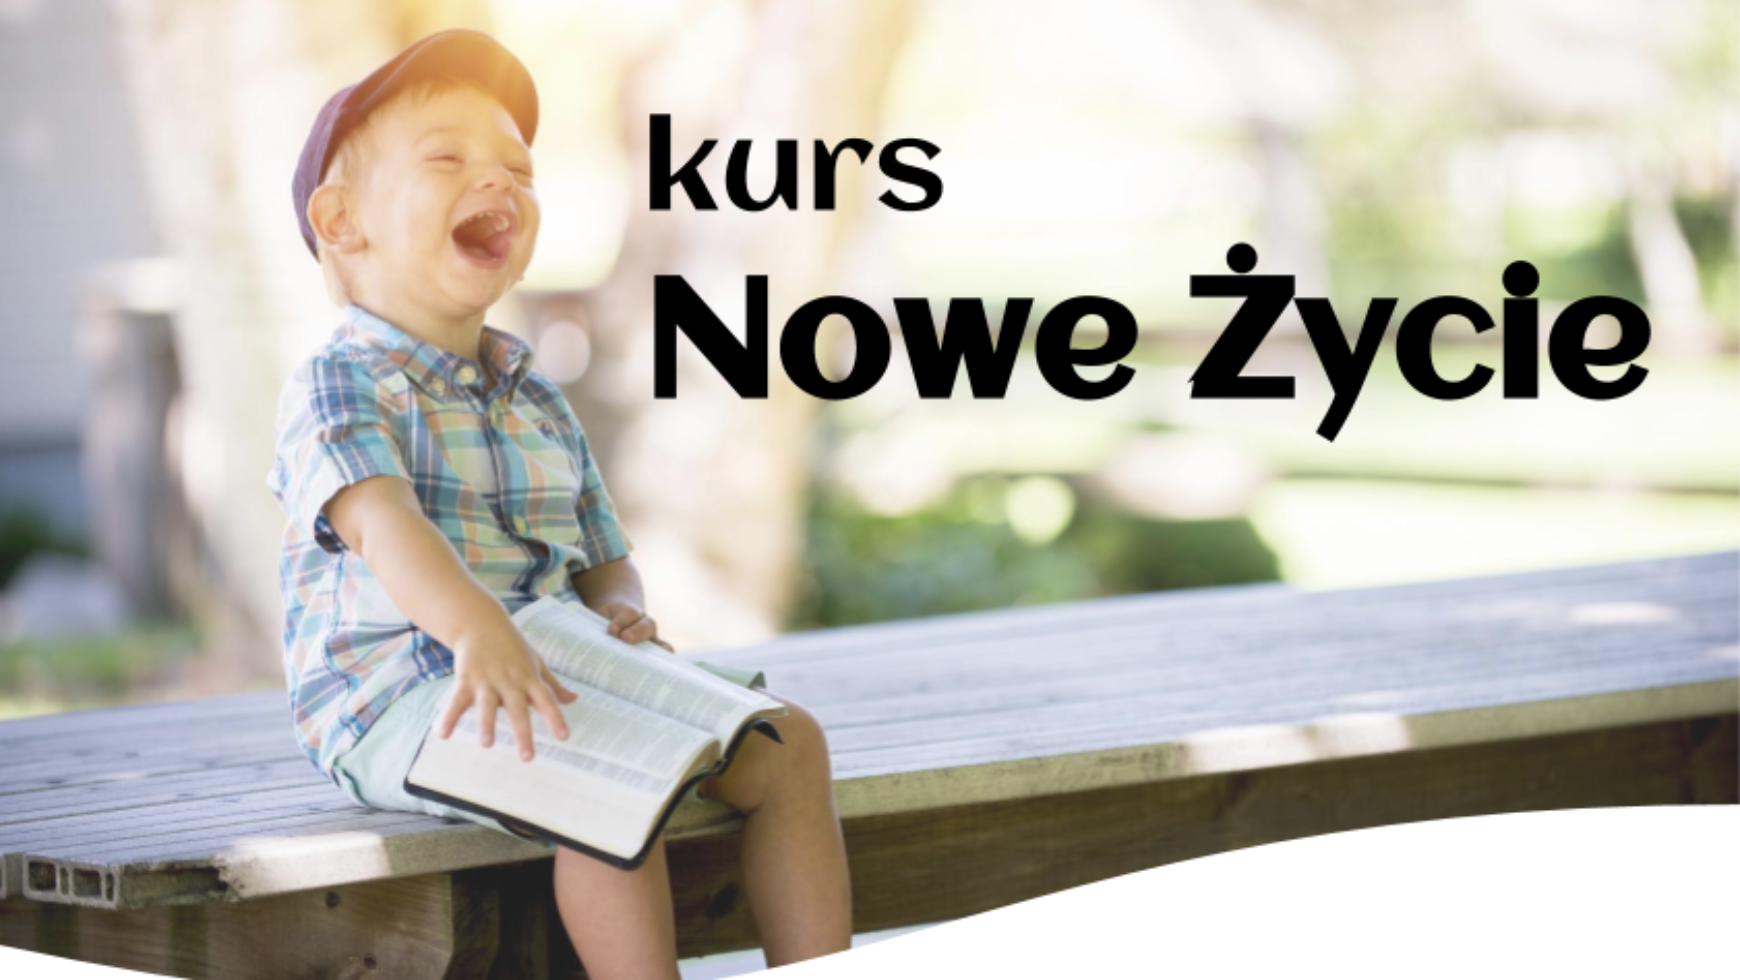 Kurs Nowe Życie w Świętochłowicach